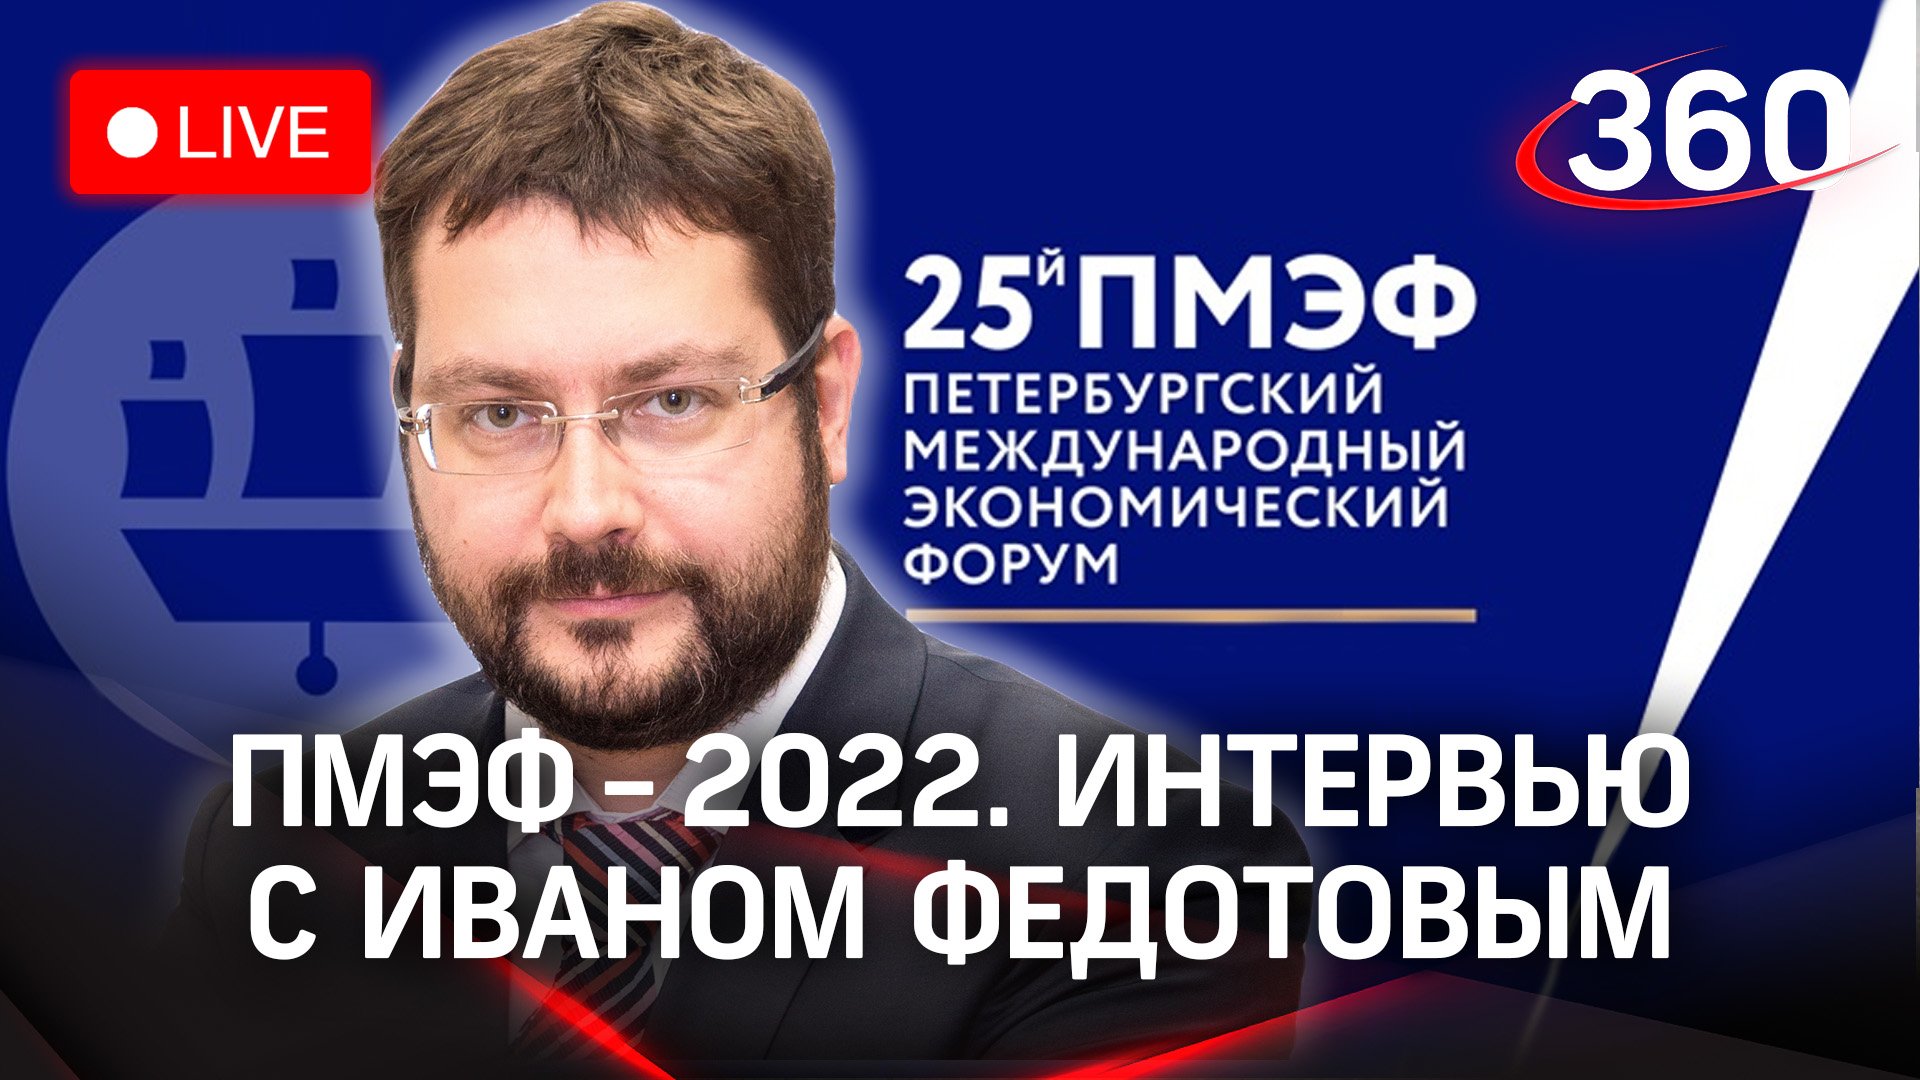 ПМЭФ-2022: интервью с Иваном Федотовым, директором Ассоциации инновационных регионов России